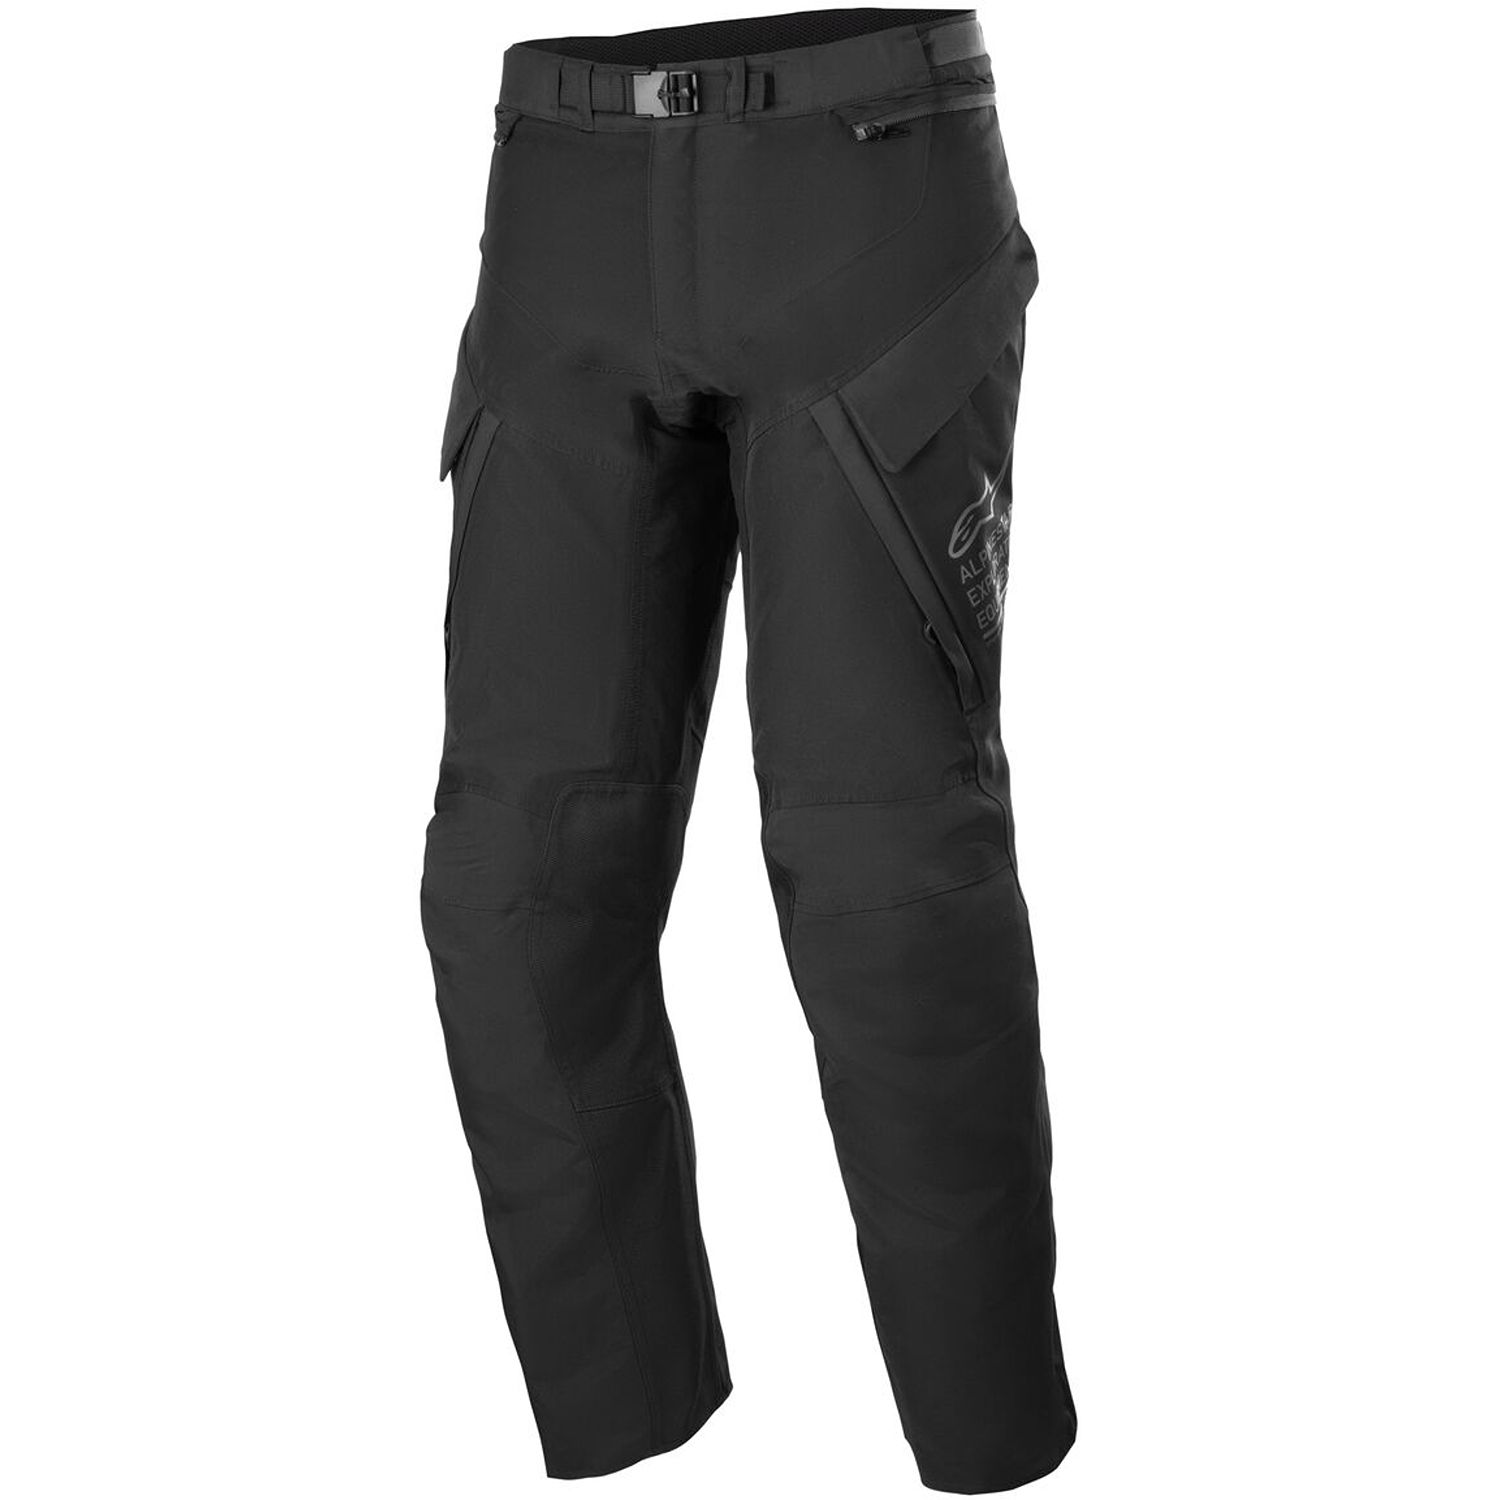 Image of Alpinestars ST-7 2L Gore-Tex Pants Black Dark Grey Size L ID 8059347249681